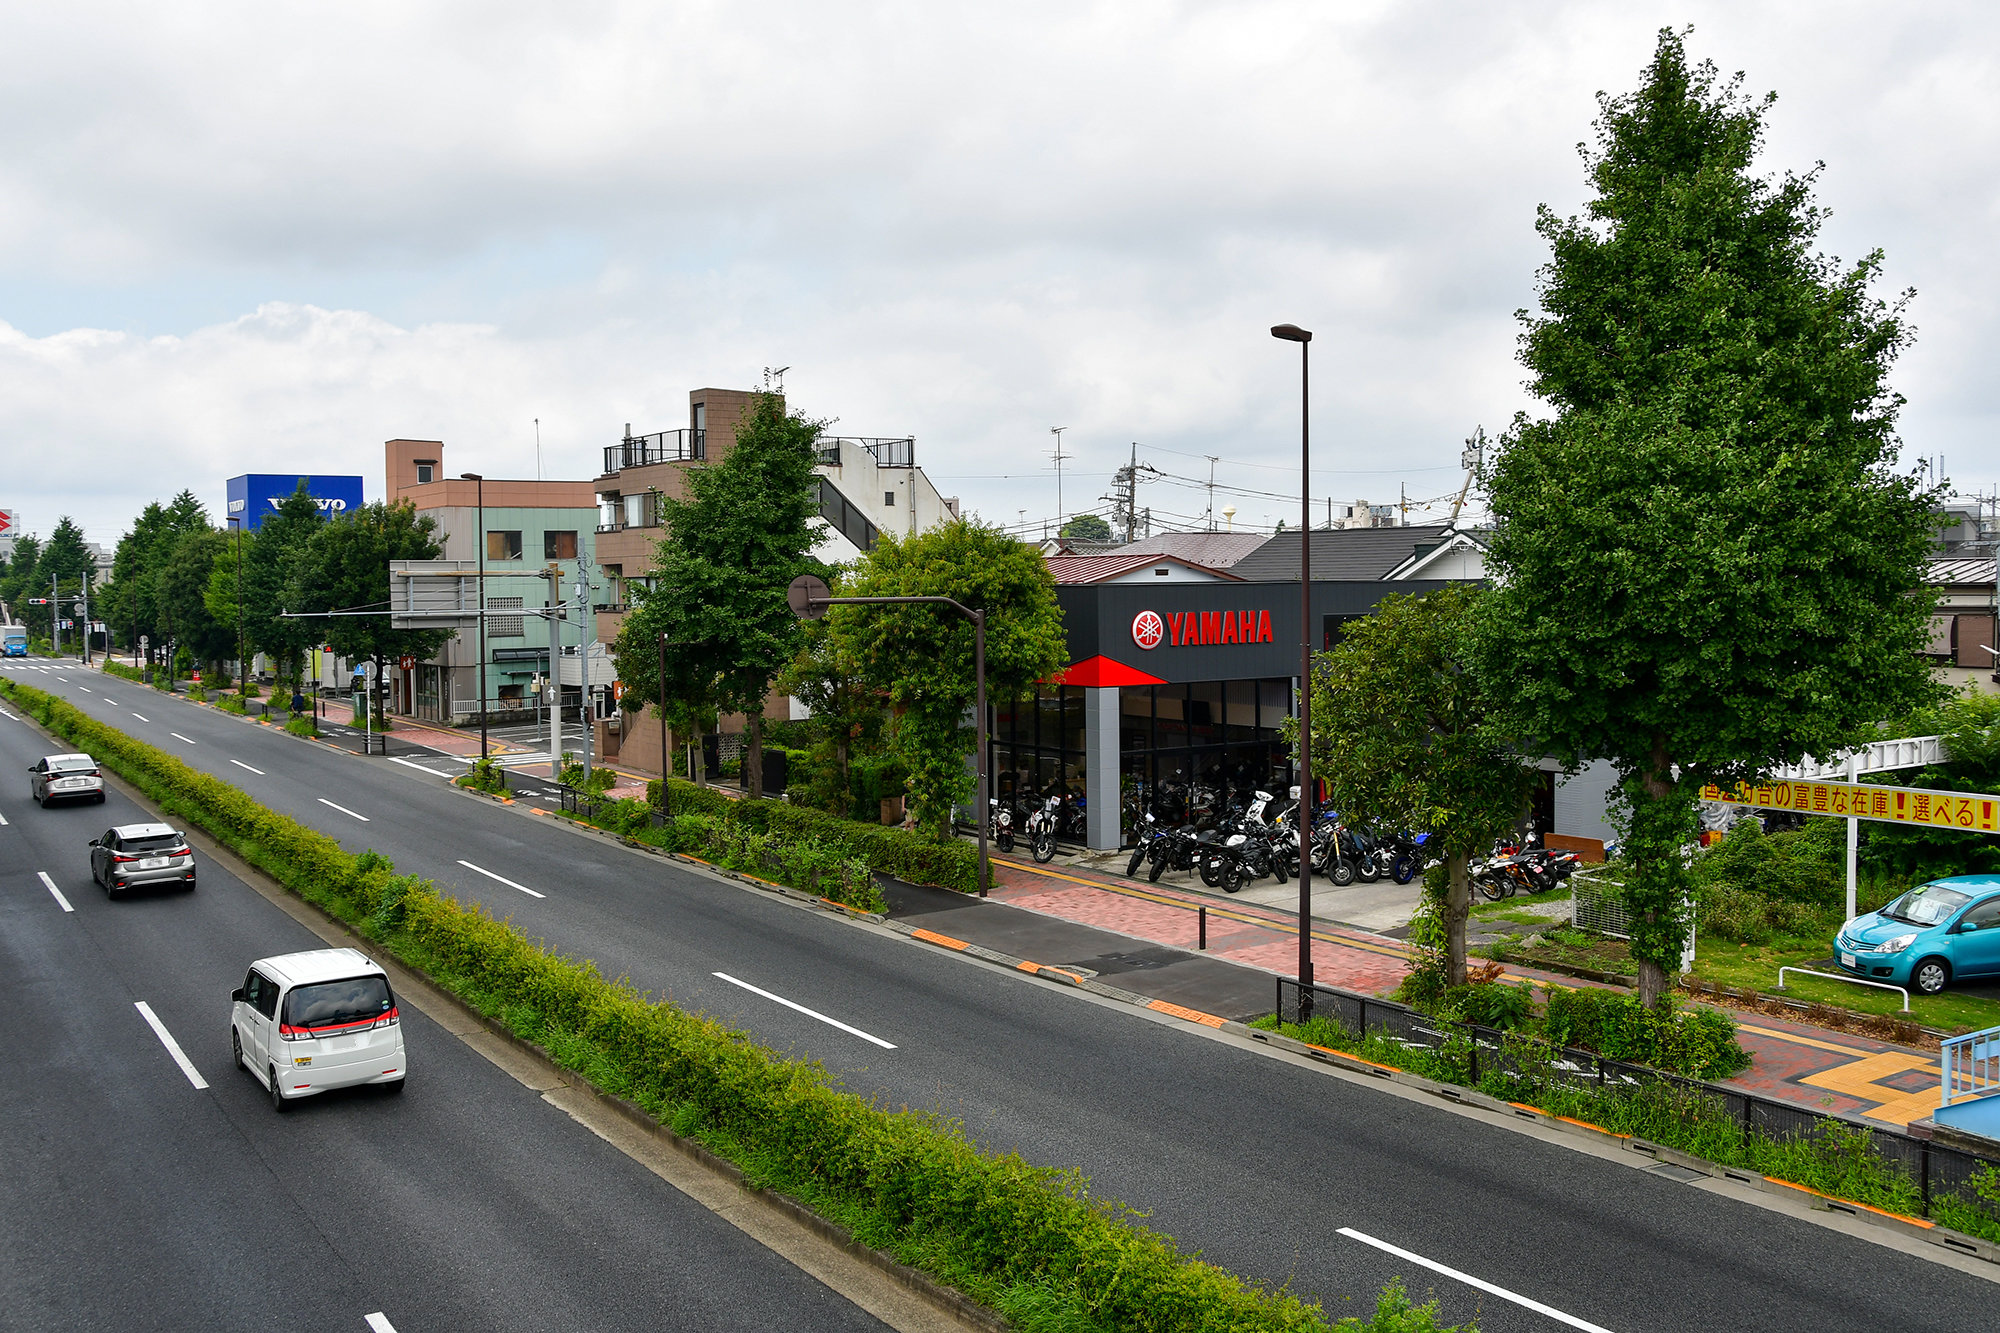 JR中央線・三鷹駅からバスで15分ほど、京王線・調布駅からもバスで20分弱と、JRと京王線どちらからもアクセスが可能です。